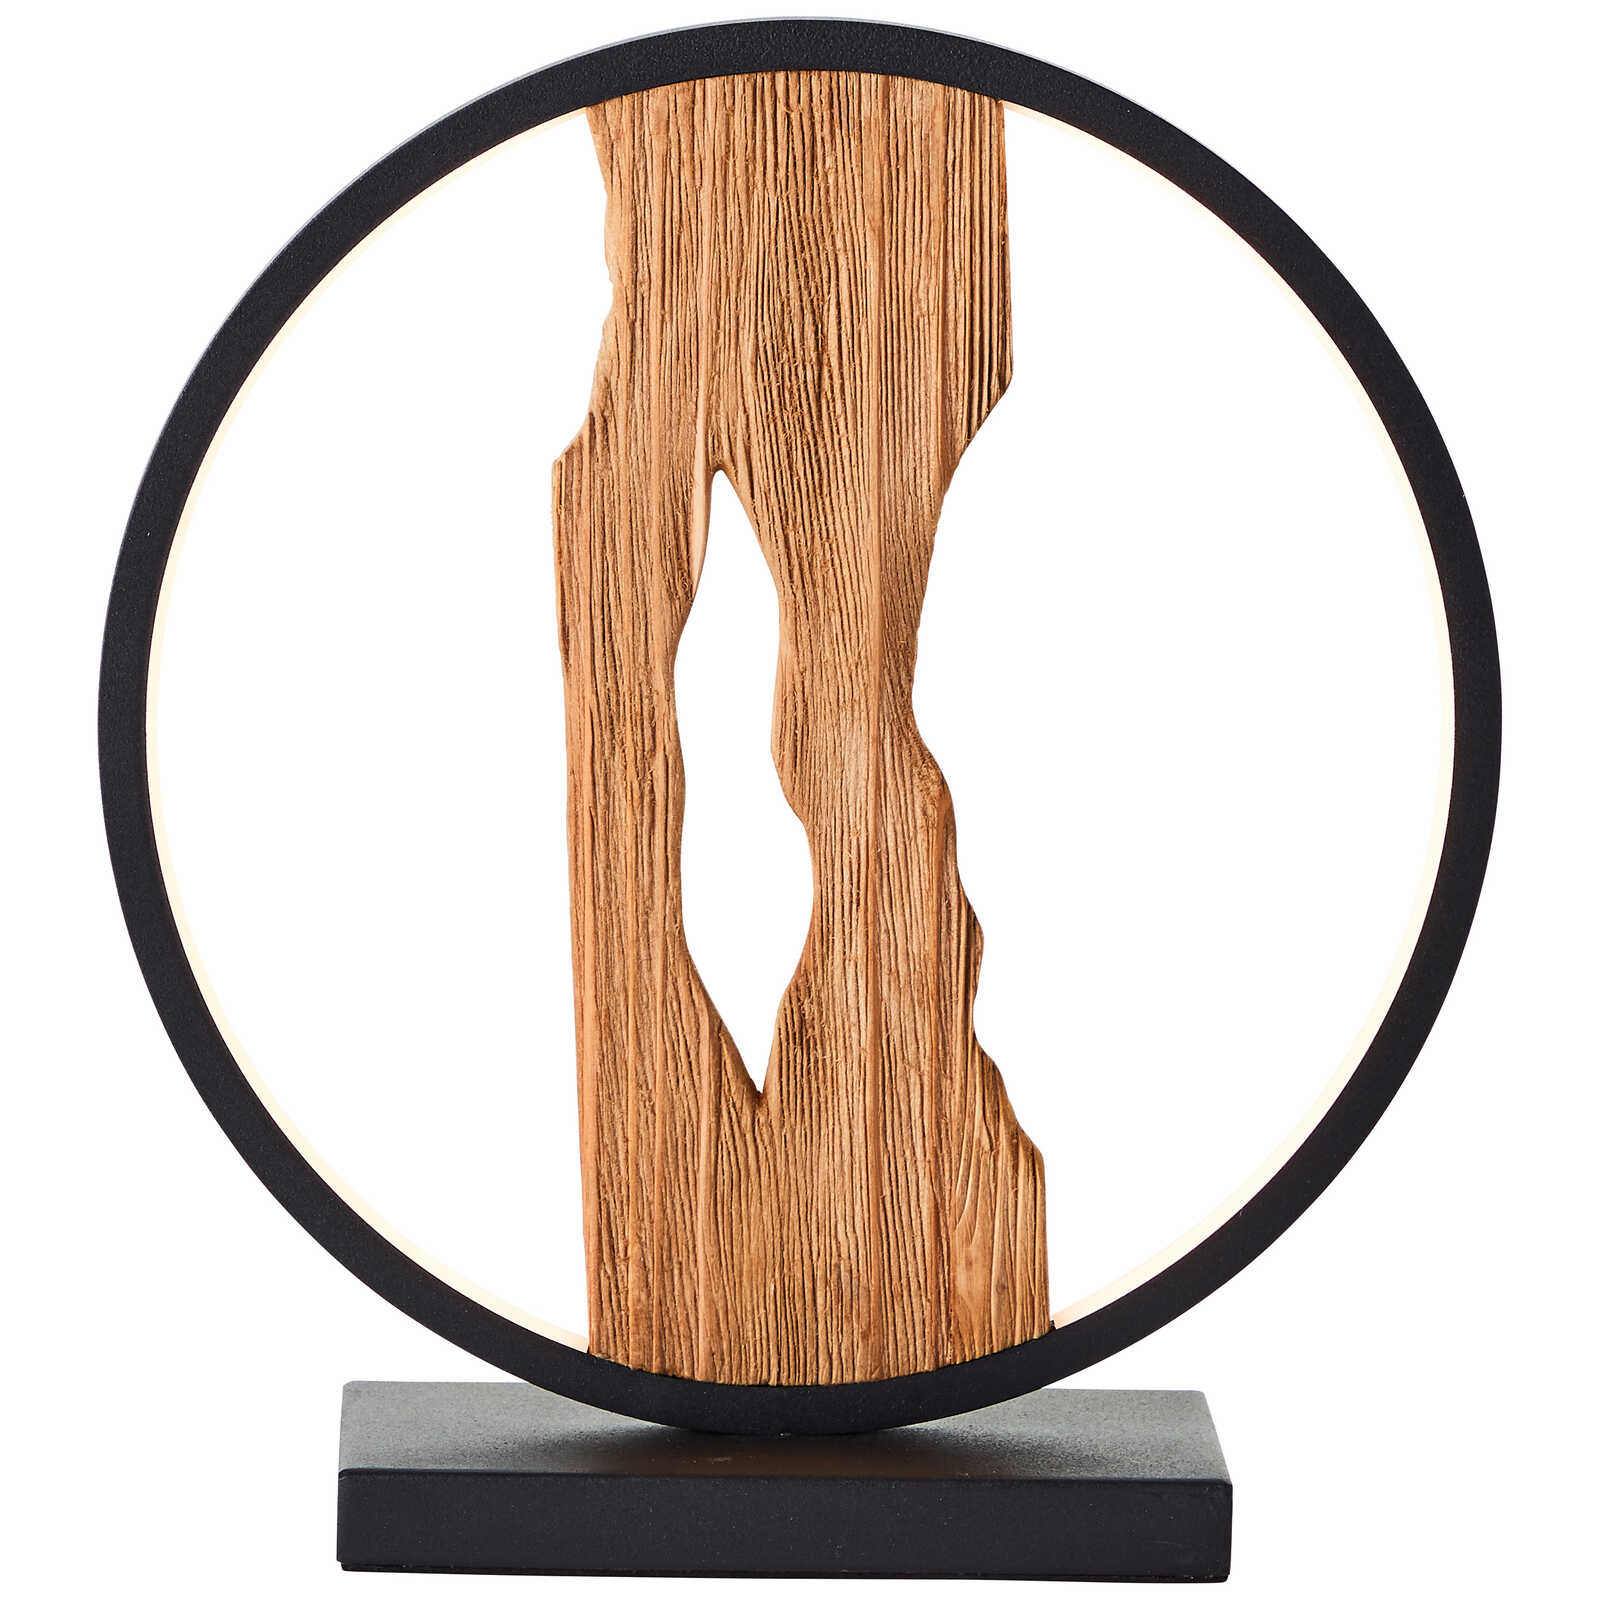             Lámpara de mesa de madera - Elea 1 - Marrón
        